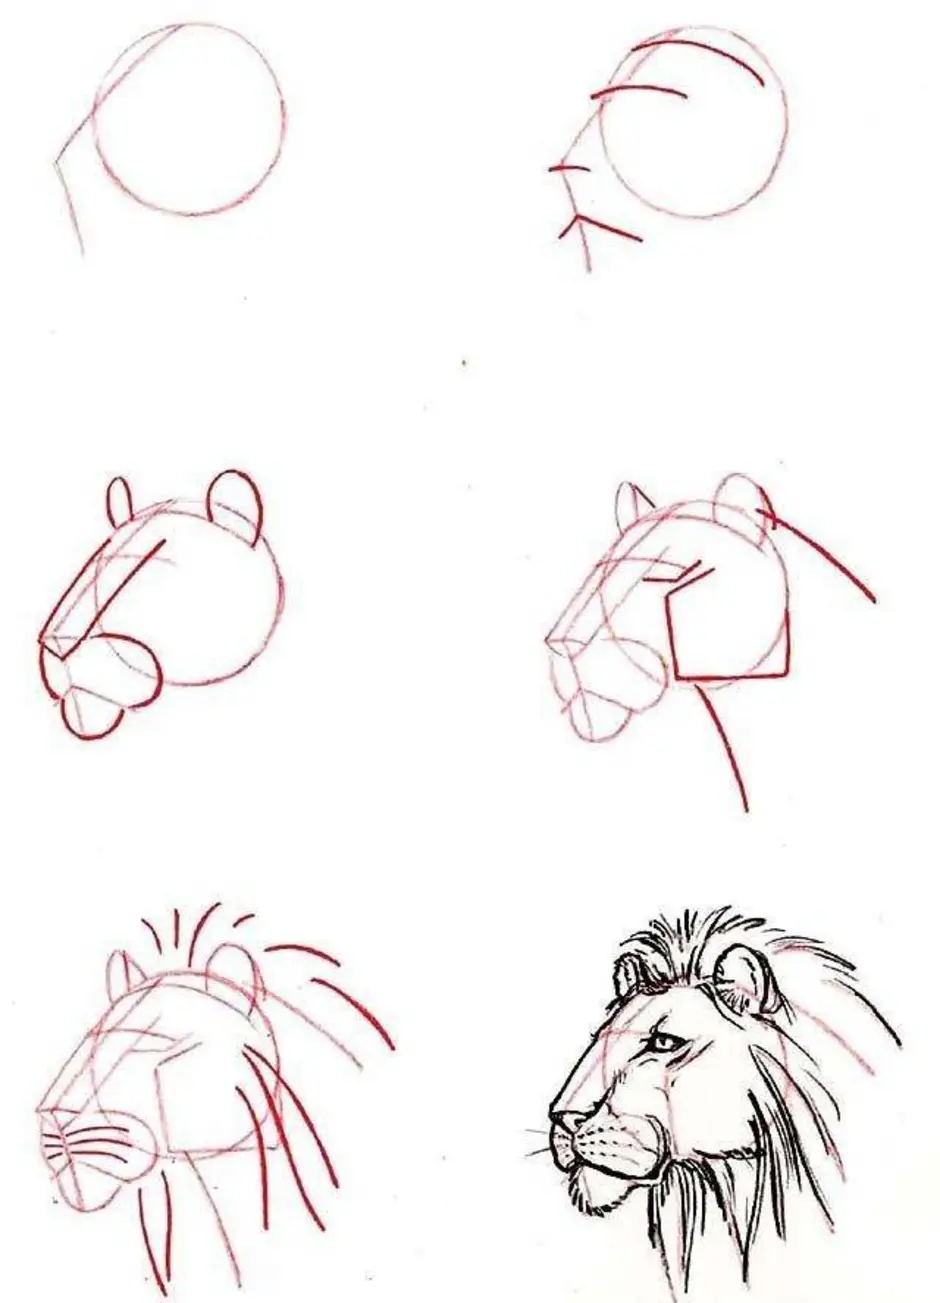 Как нарисовать (рисовать) животных - поэтапные рисунки и видеоуроки